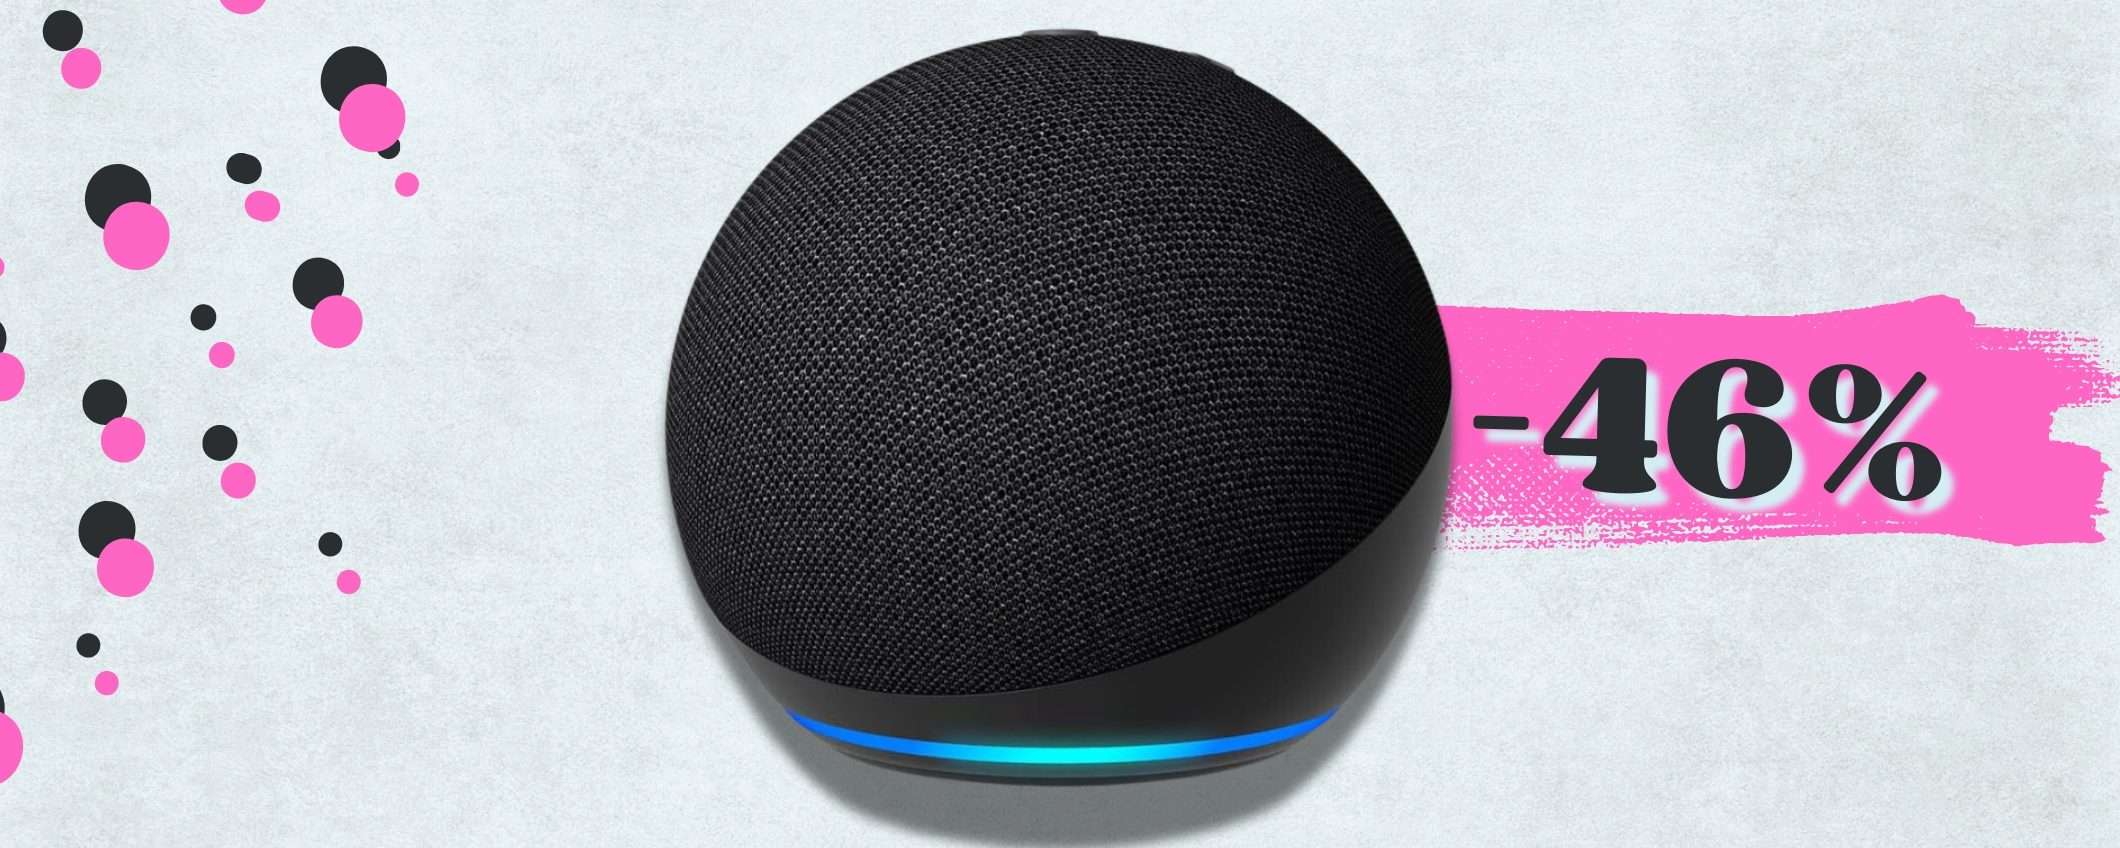 Echo Dot di 5ª generazione FUORI TUTTO: sconto 46% per Alexa a casa